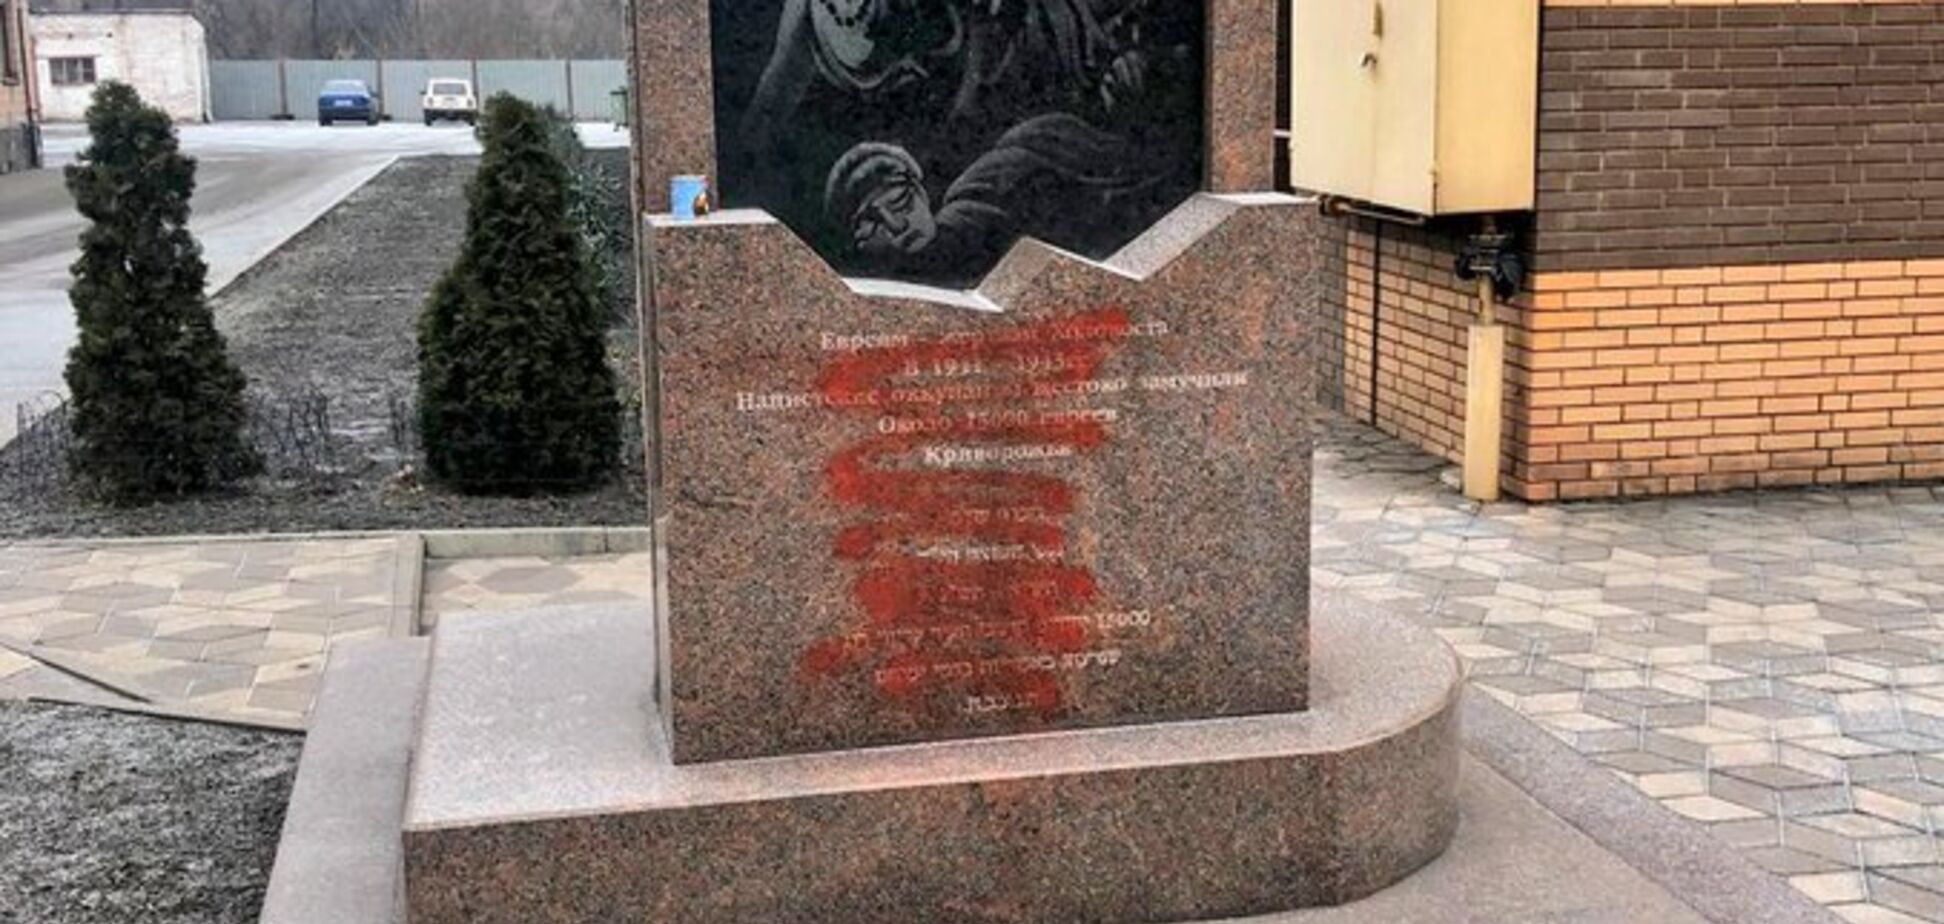 Під Дніпром вандали осквернили пам'ятник жертвам Голокосту. Фото